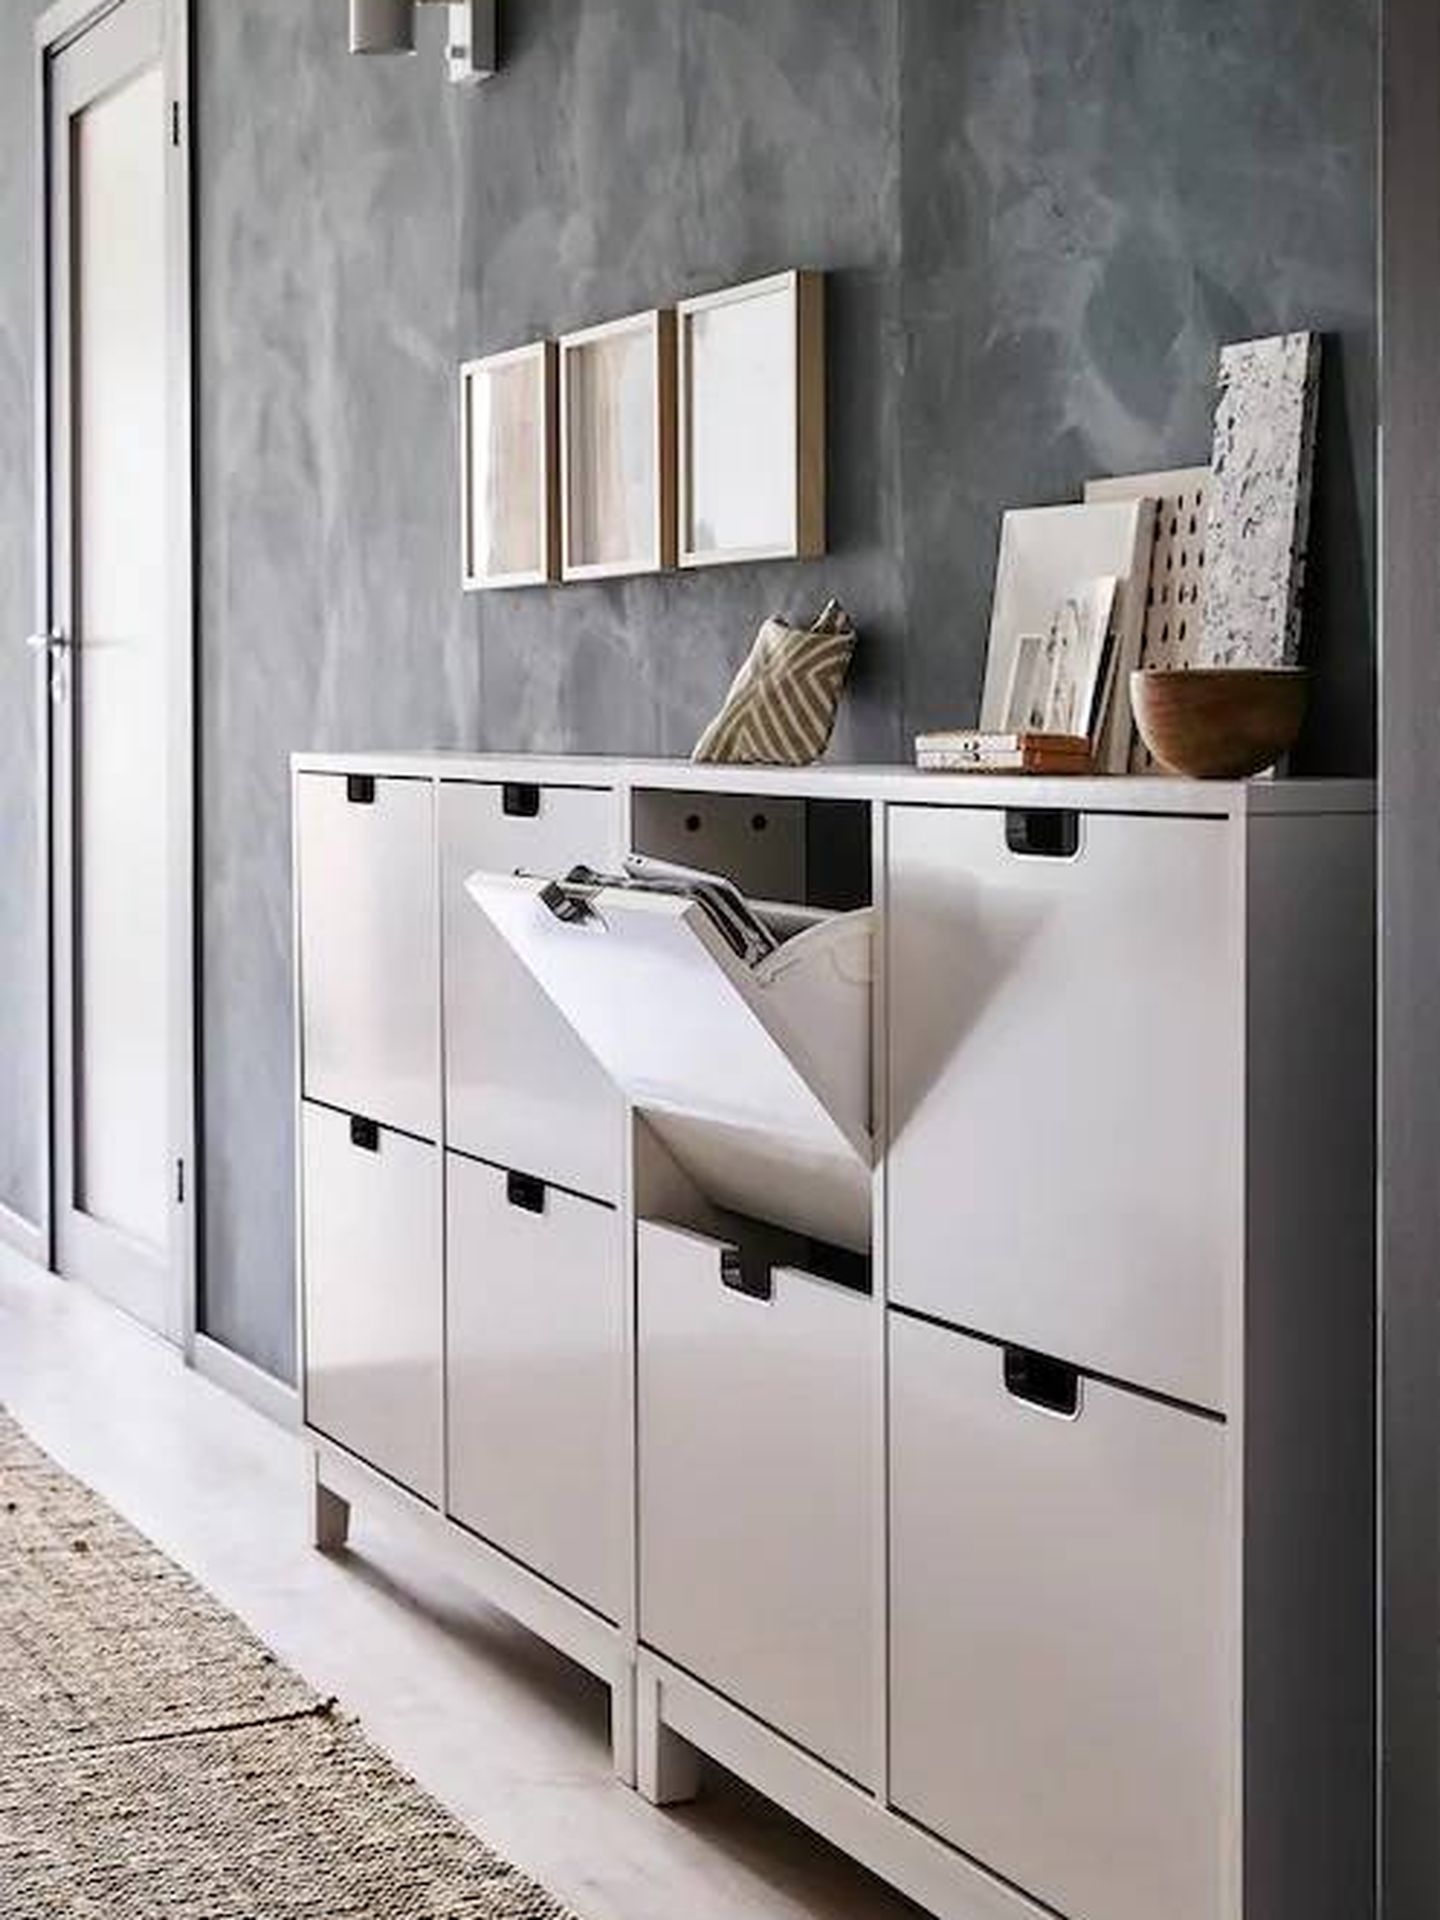 Este armario zapatero de Ikea es ideal para espacios estrechos. (Cortesía)